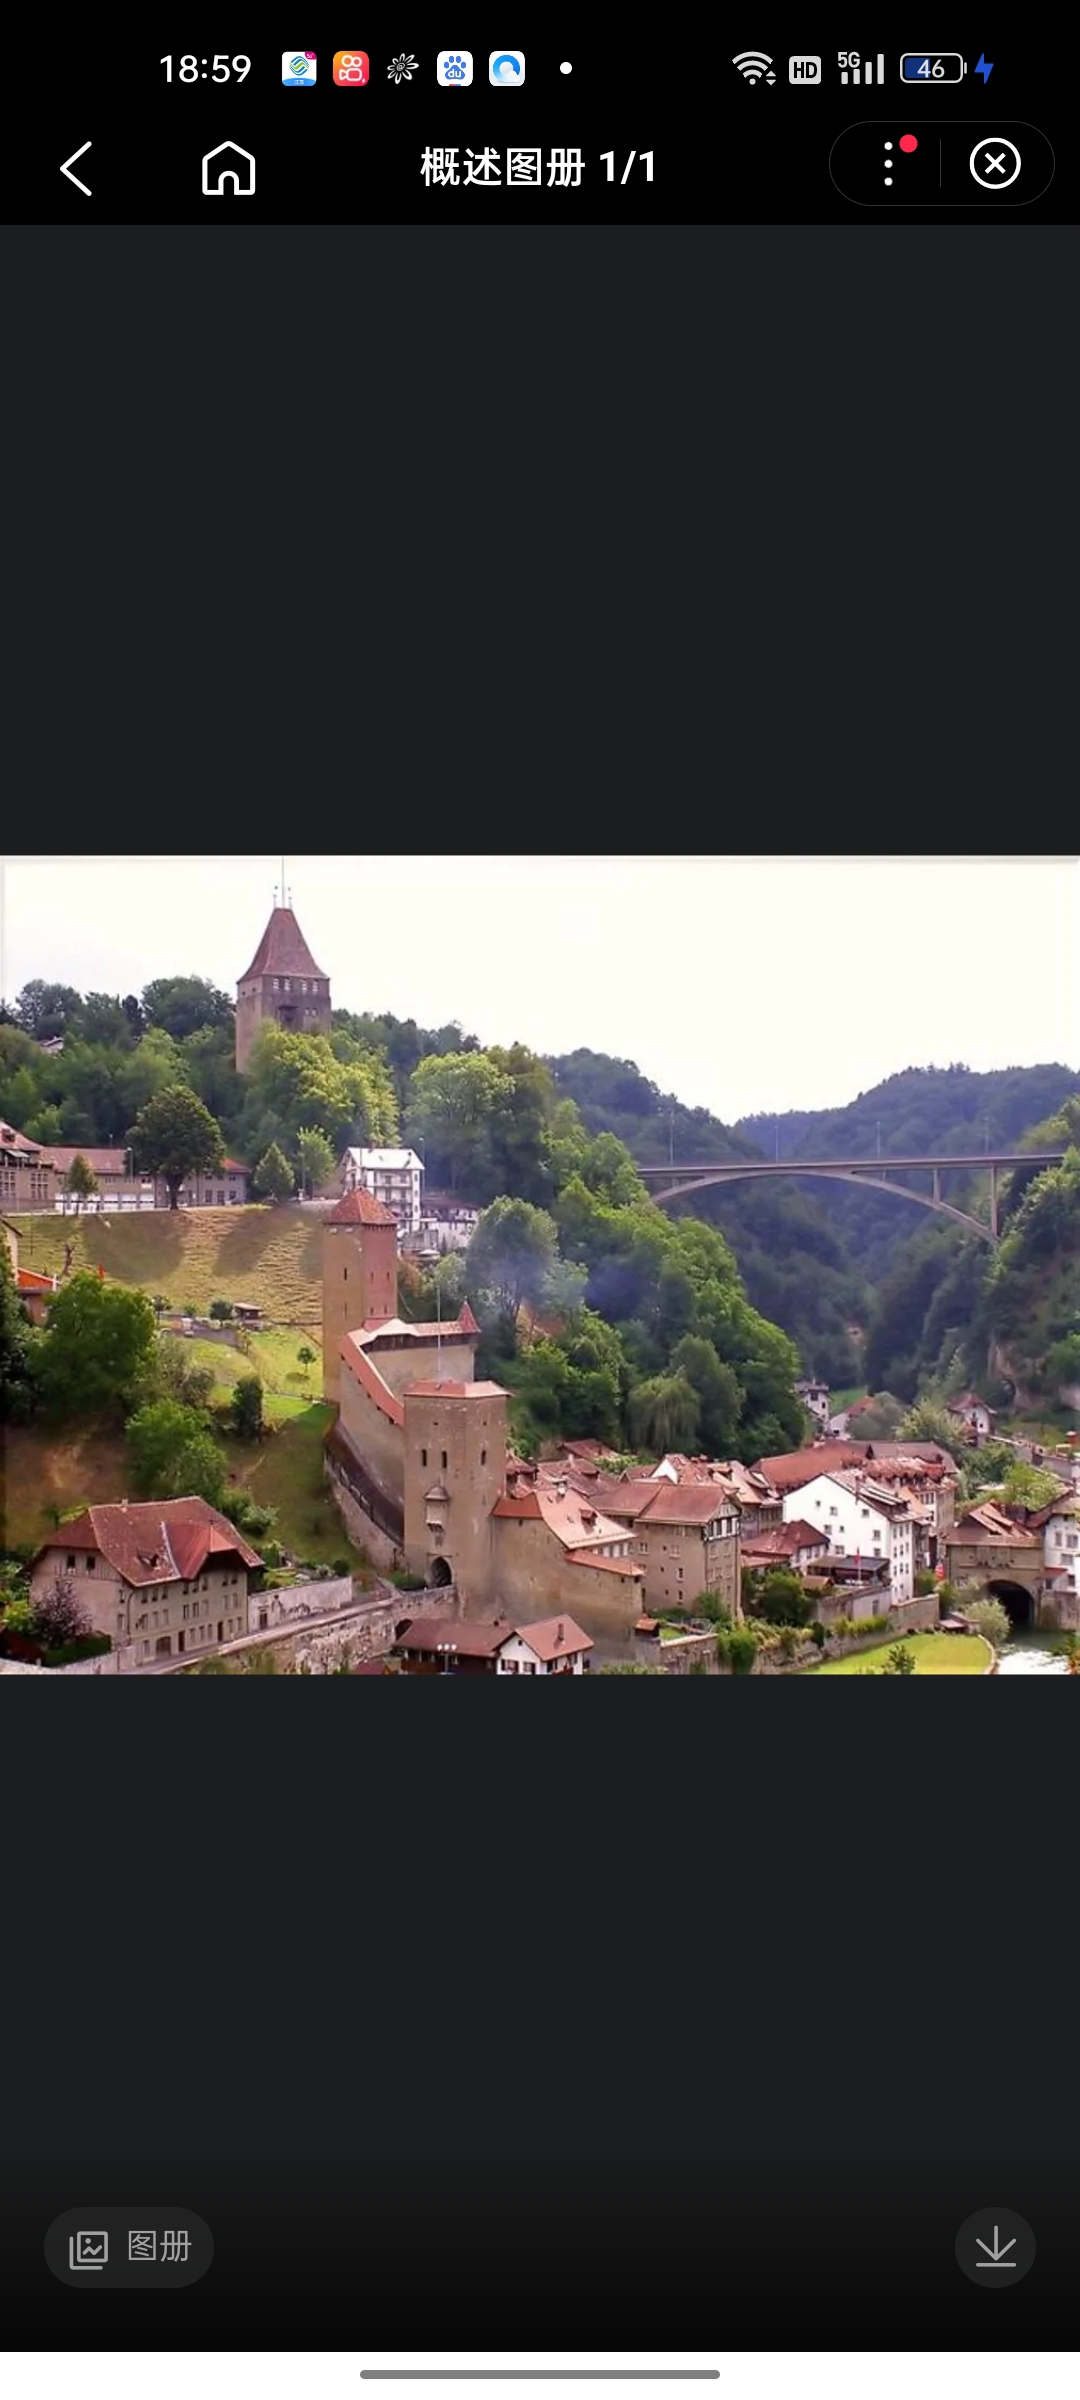 弗里堡瑞士西部城市，弗里堡州首府。在阿勒河支流萨林河畔。人口4万，讲法语。1157年建城。中世纪贸易